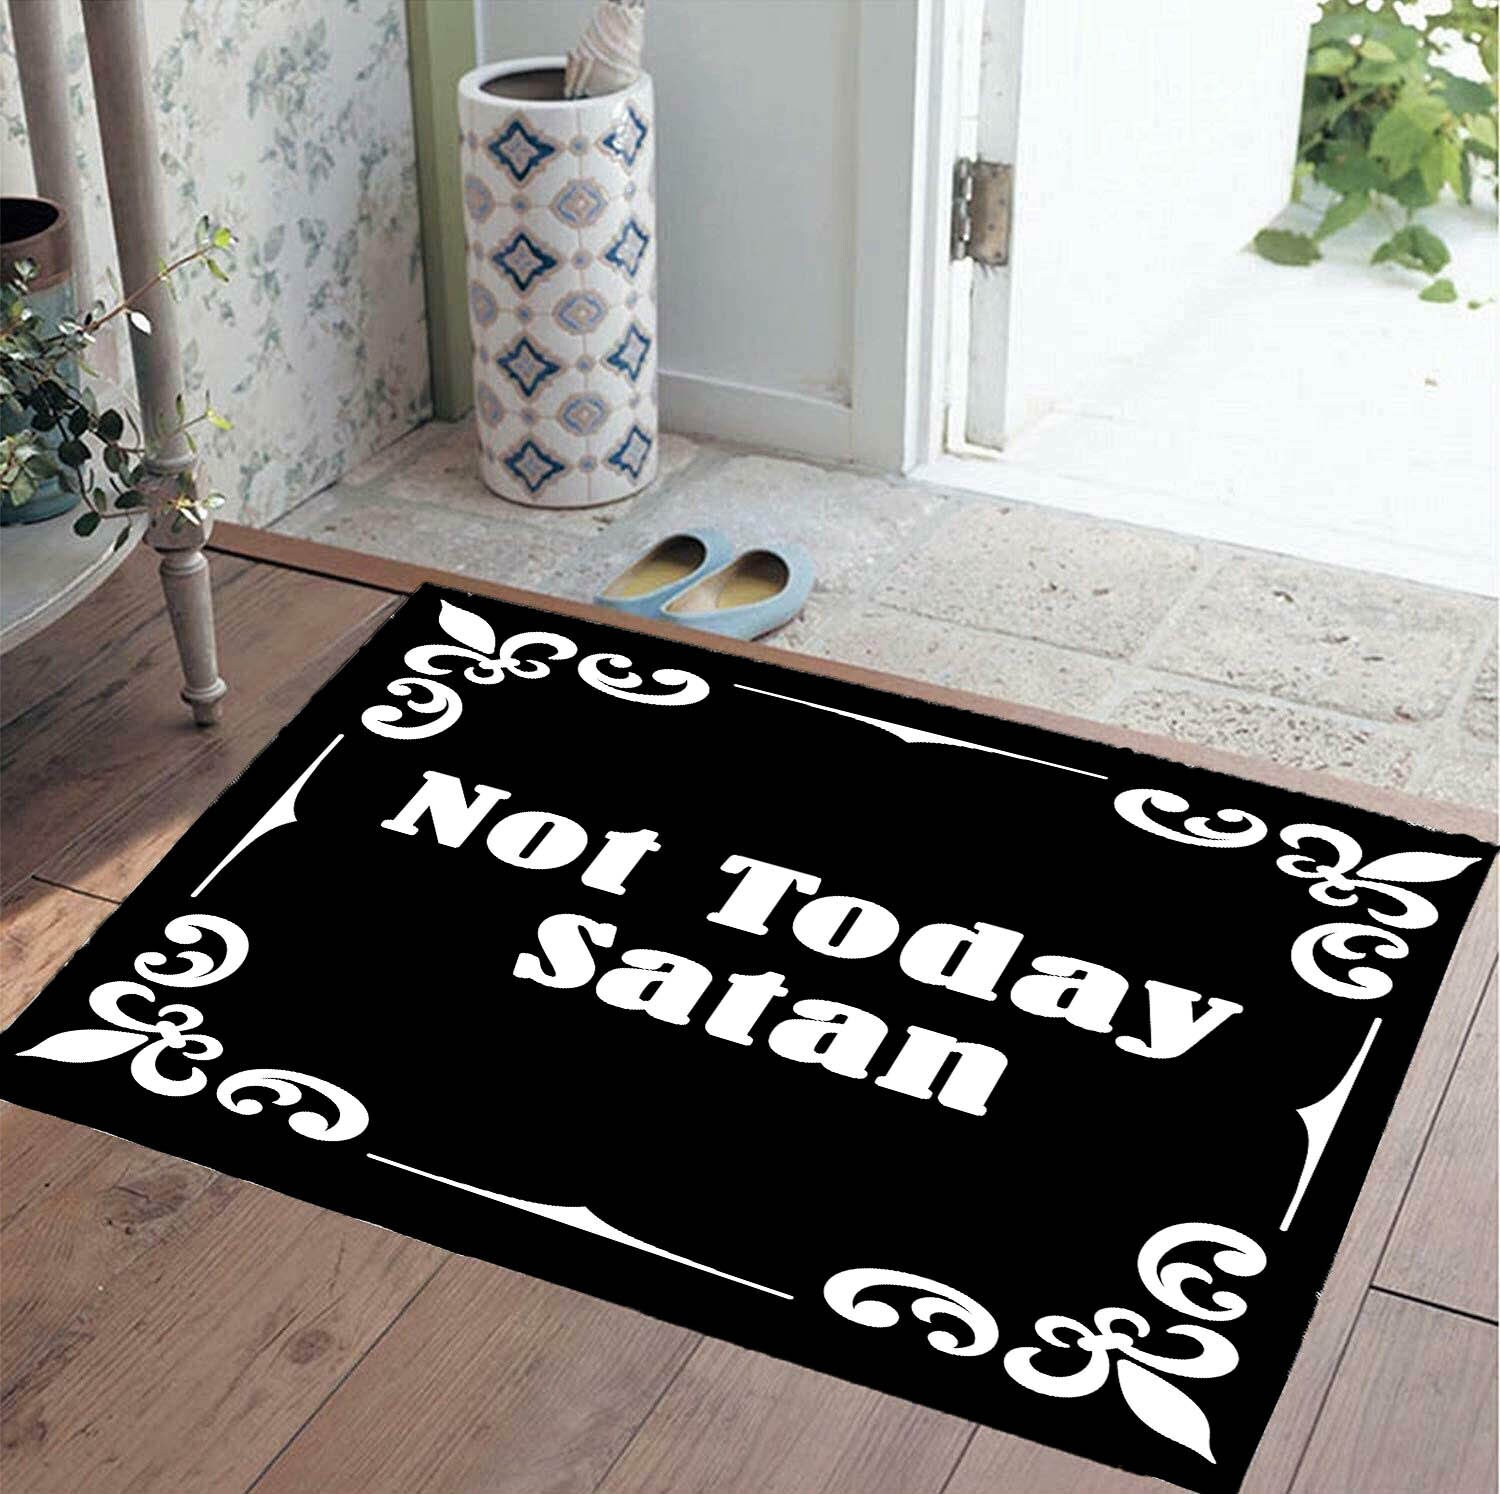 Not Today Satan Funny Doormats Black Front Area Rug Outdoor - Etsy